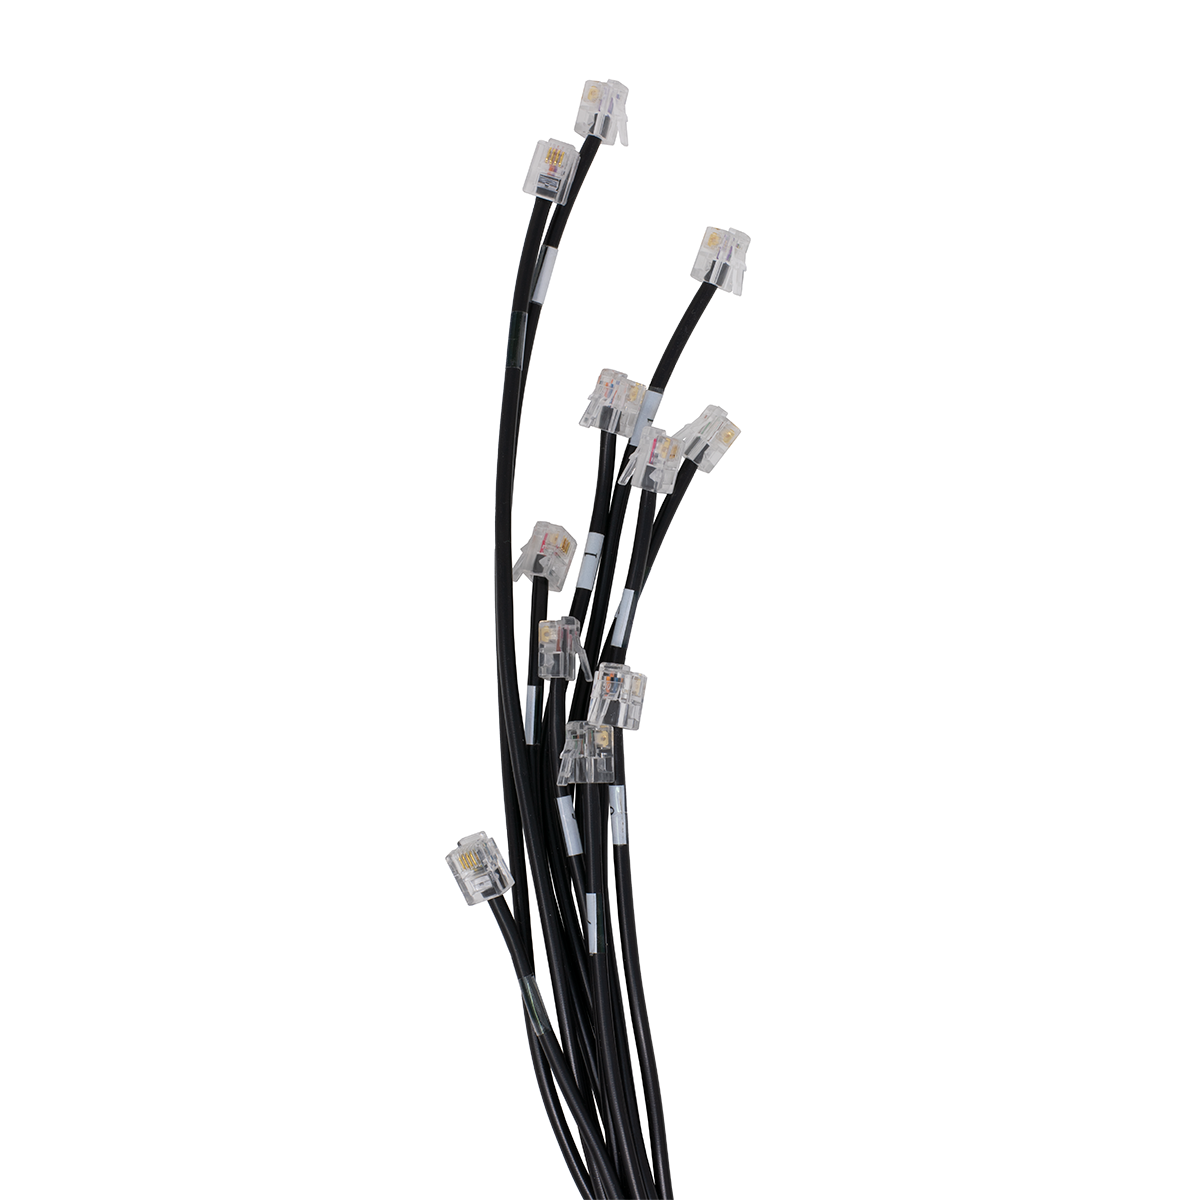 QWIK 10' Panasonic 624/824 Cable (Plug View)